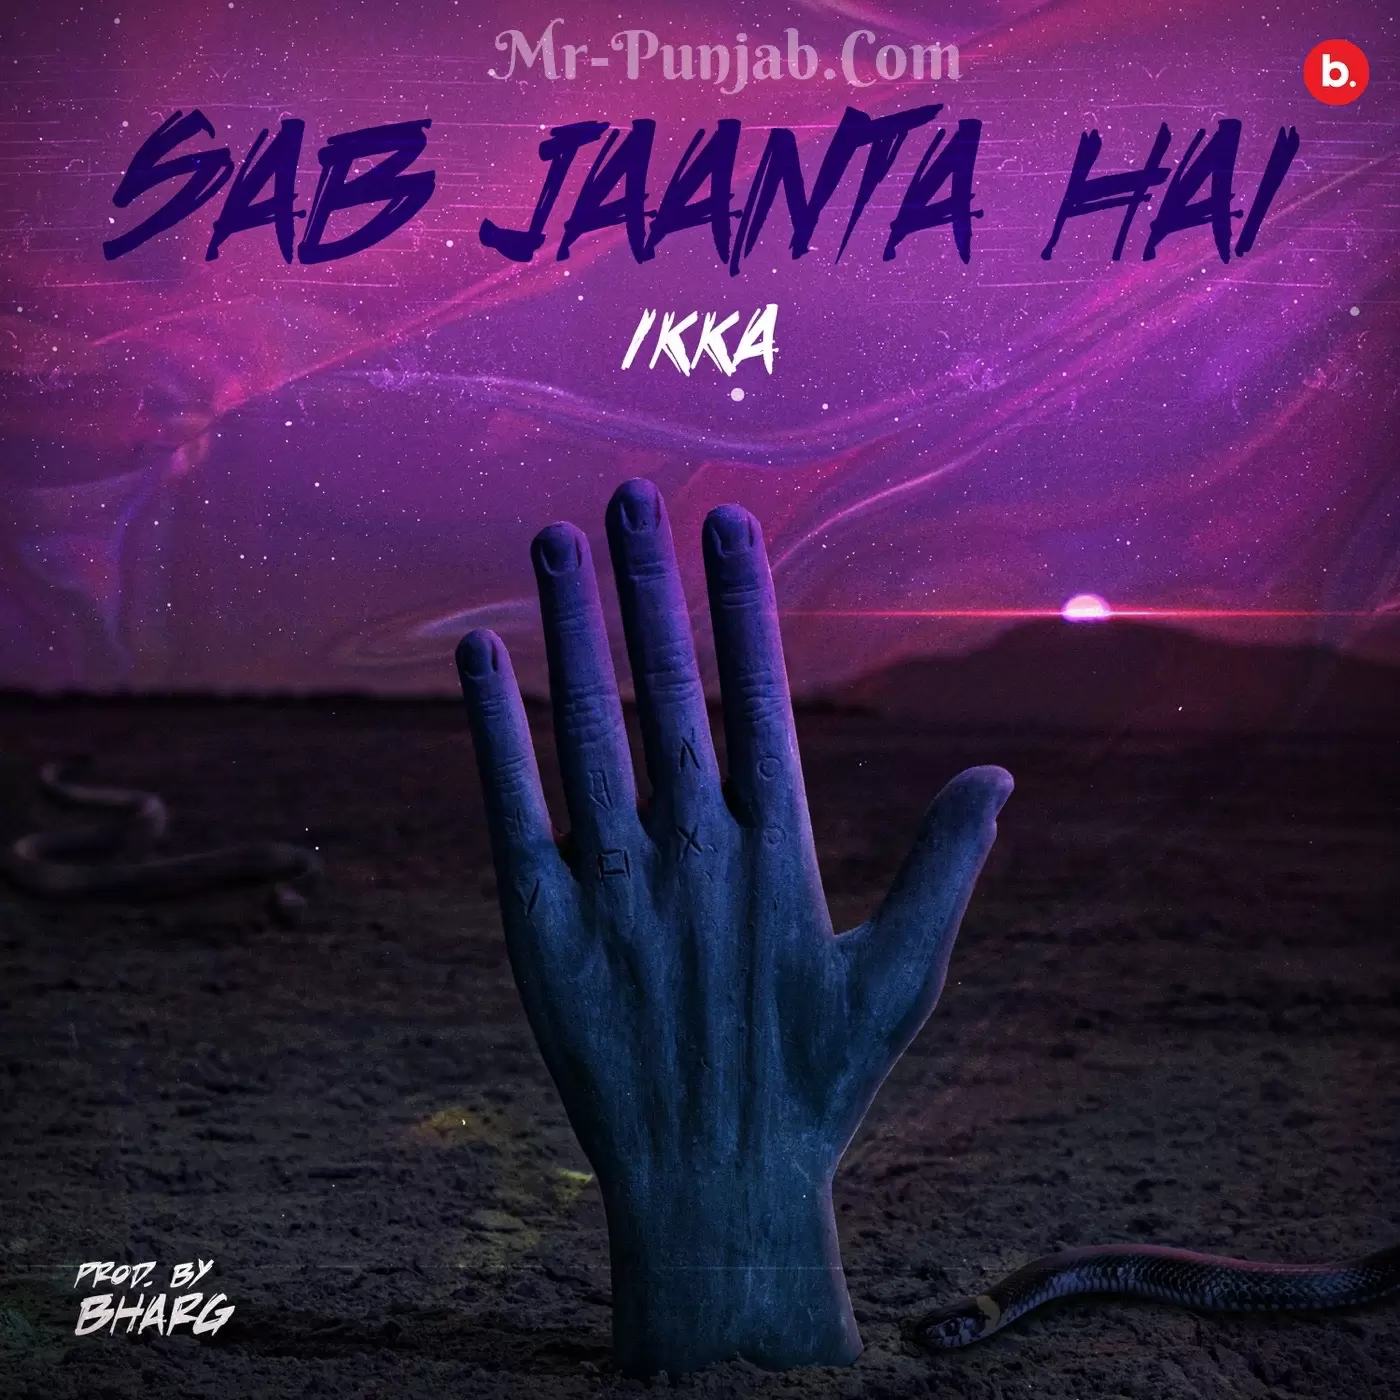 Sab Jaanta Hai Ikka Mp3 Download Song - Mr-Punjab